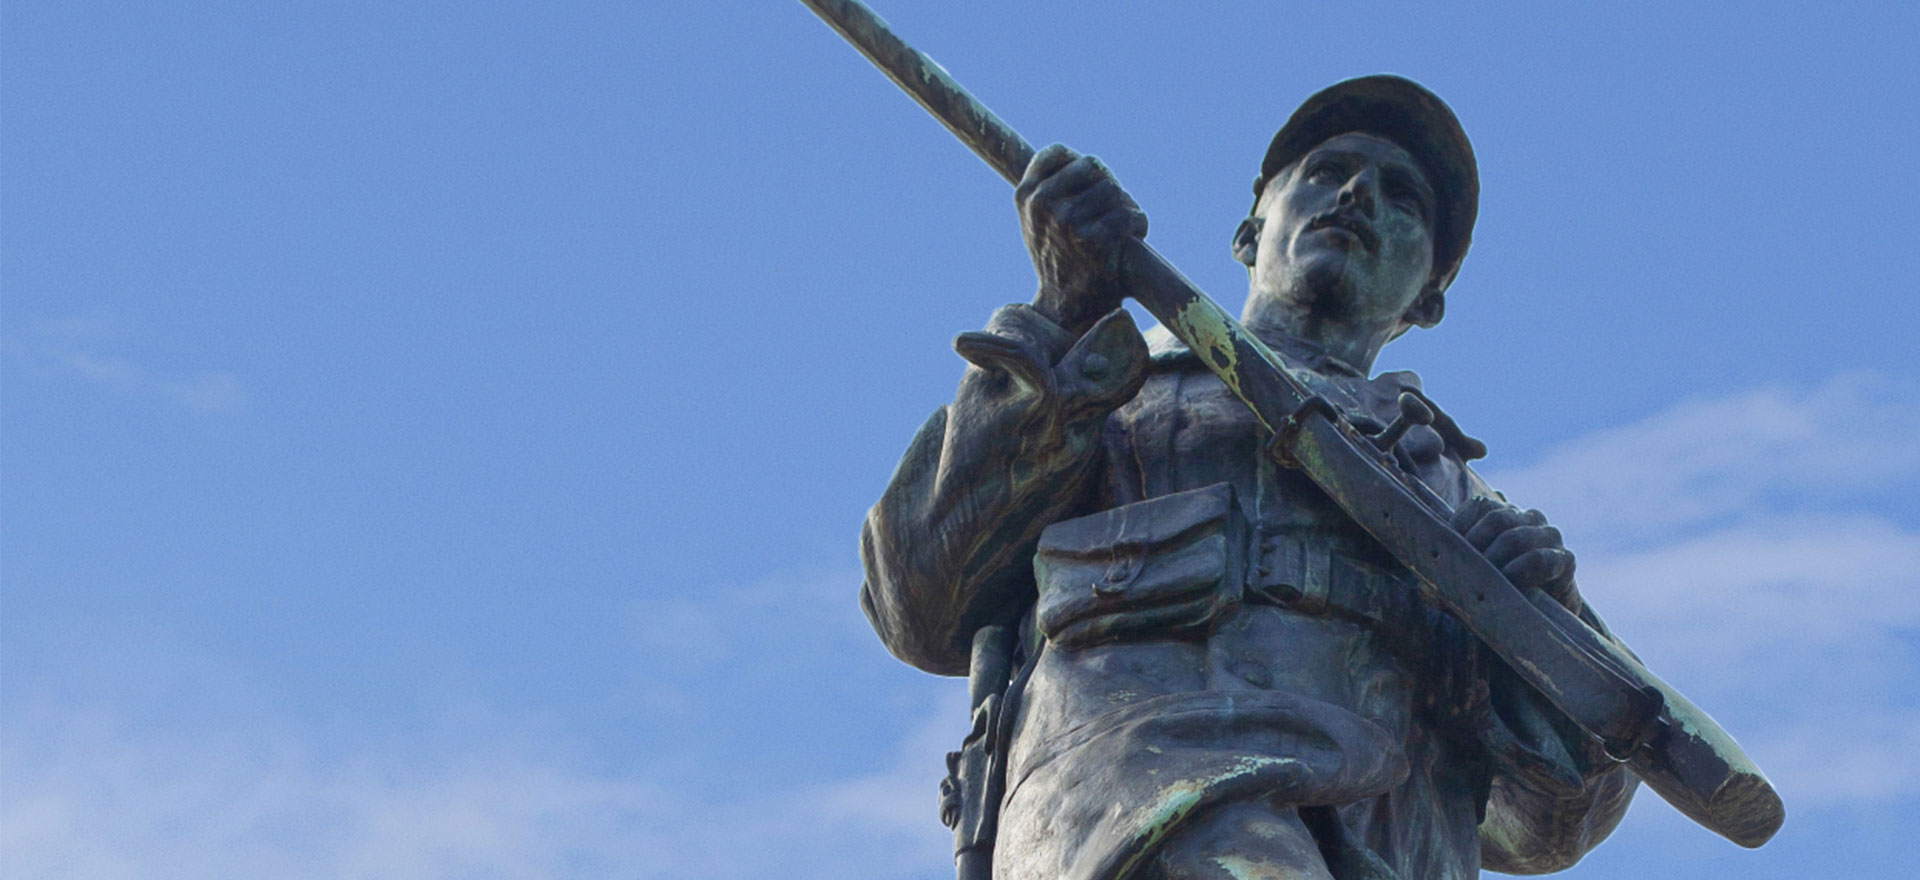 Statue d'un soldat en bronze avec un ciel bleu